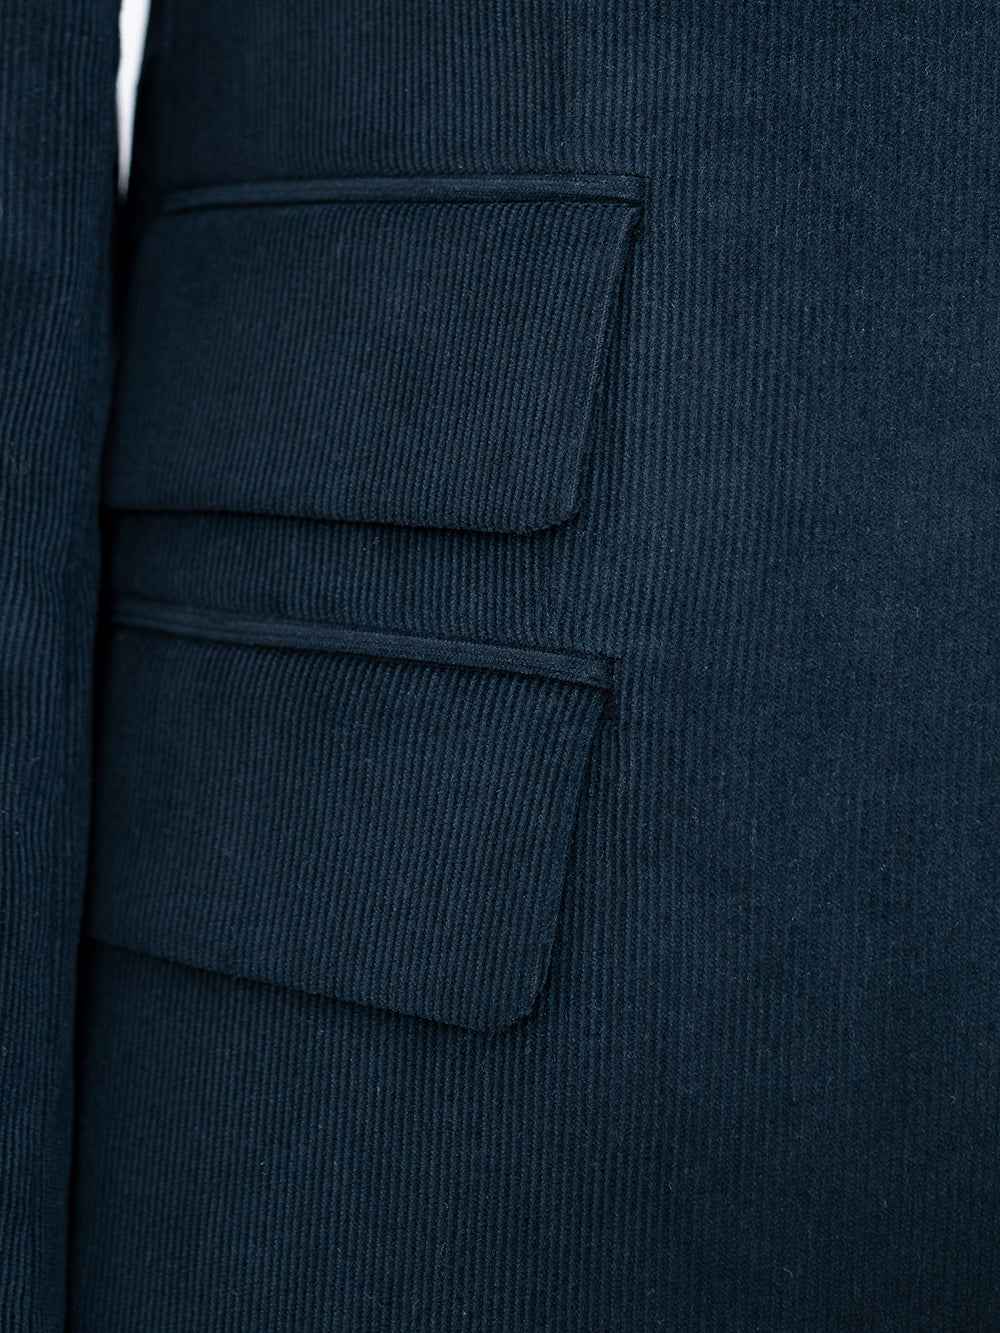 Abdiel Blue Linen Suit